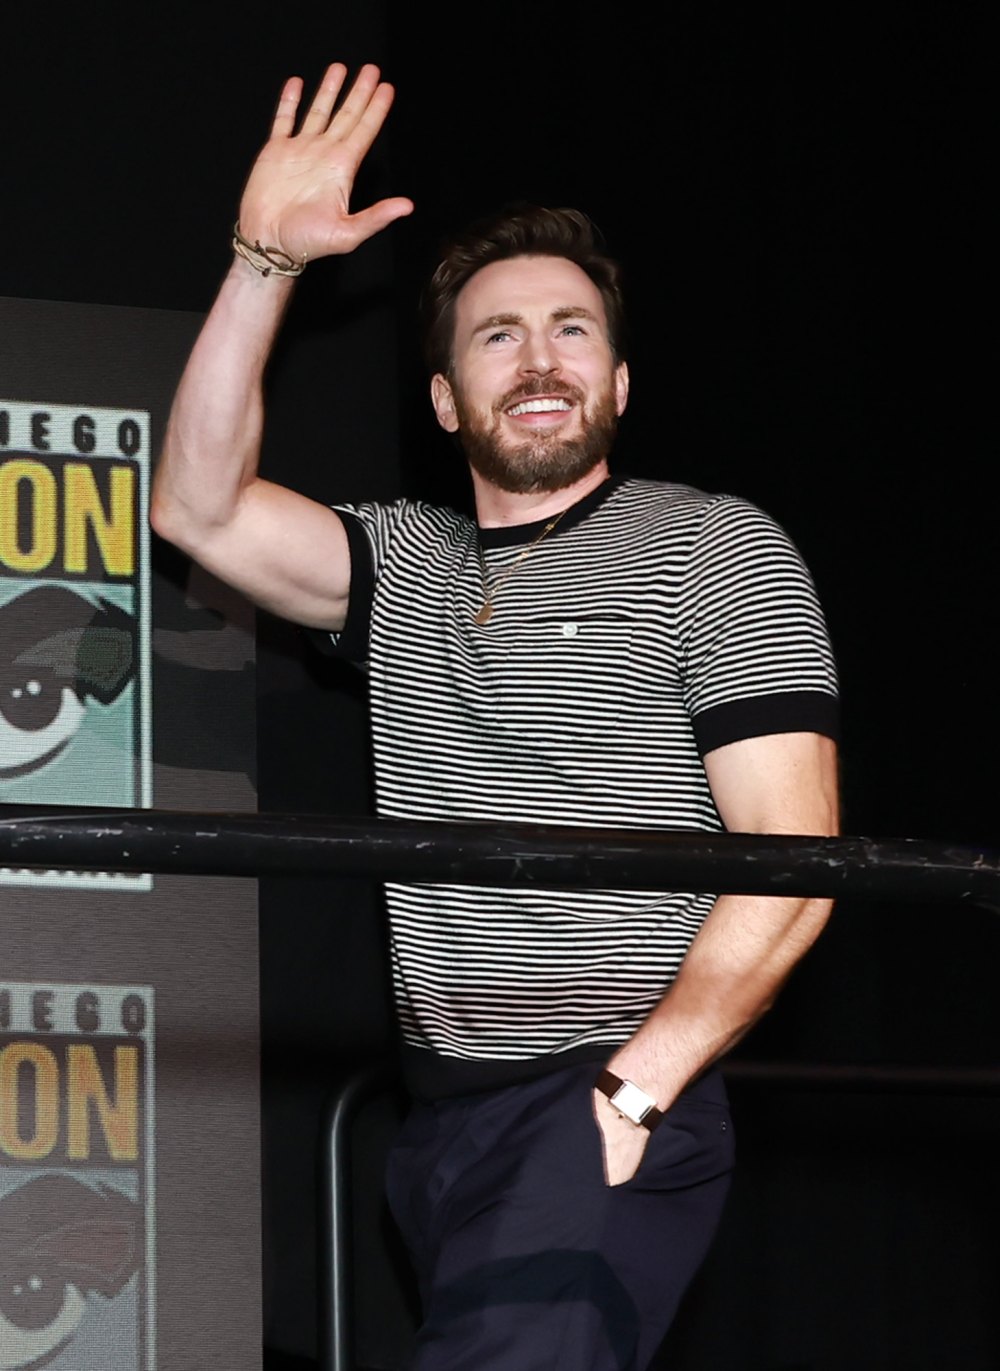 Aparecen cameos de estrellas de 'Deadpool y Wolverine' en Comic-Con